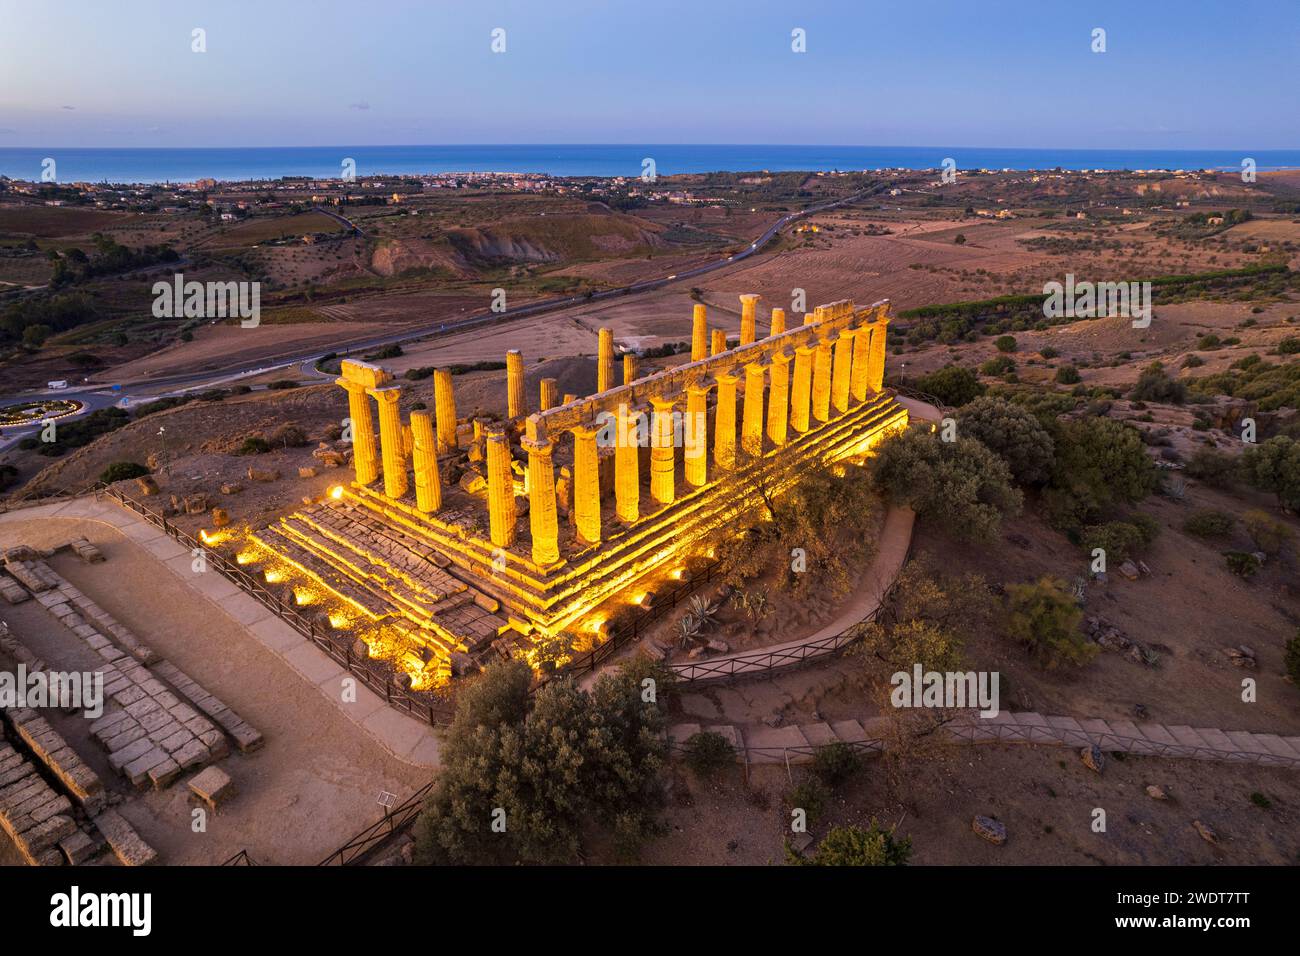 Il tempio greco illuminato di Hera visto da un drone, la Valle dei Templi, patrimonio dell'umanità dell'UNESCO, Agrigento, Sicilia, Italia, Mediterraneo Foto Stock